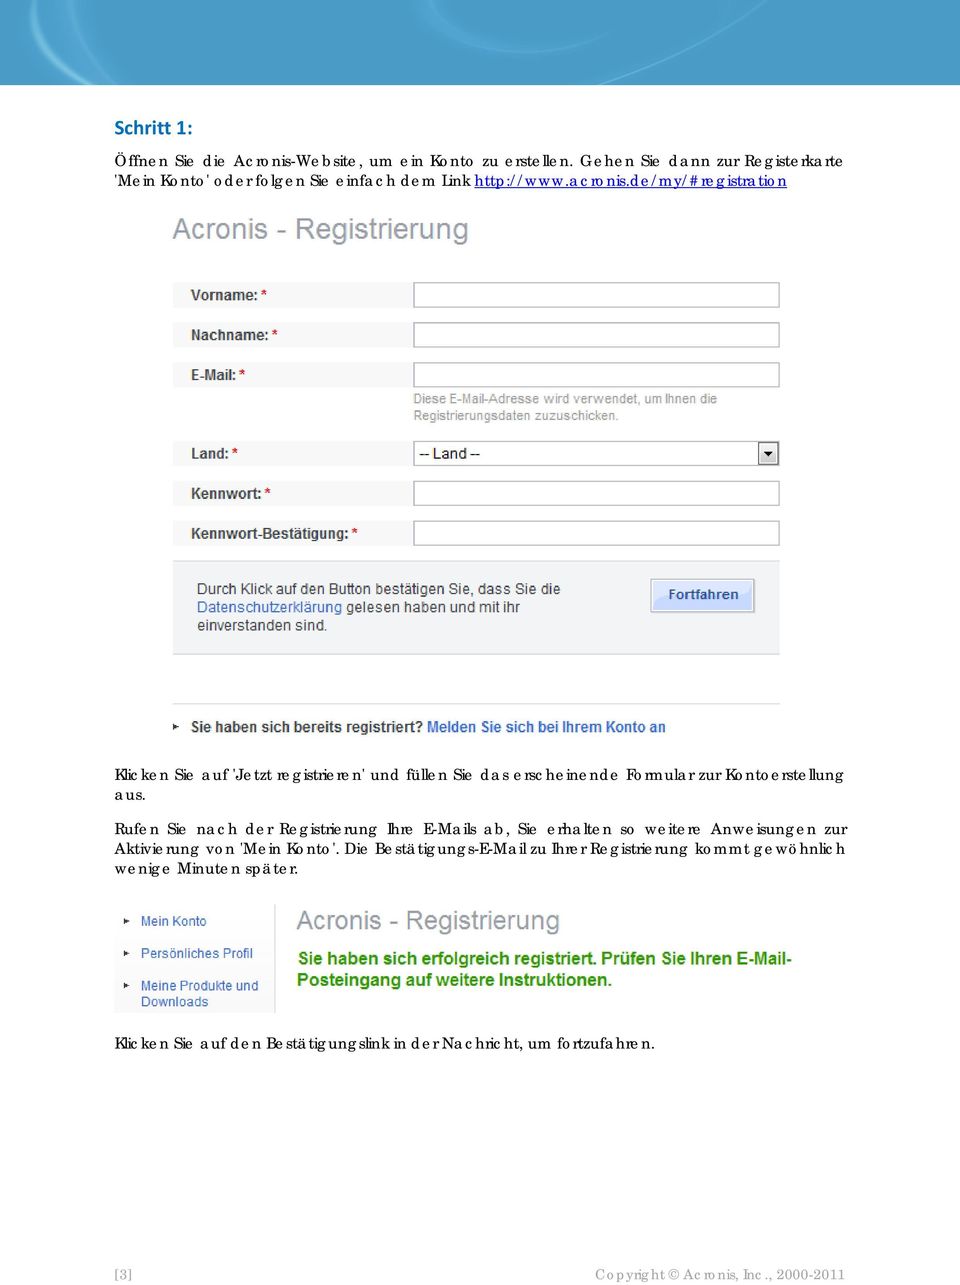 de/my/#registration Klicken Sie auf 'Jetzt registrieren' und füllen Sie das erscheinende Formular zur Kontoerstellung aus.